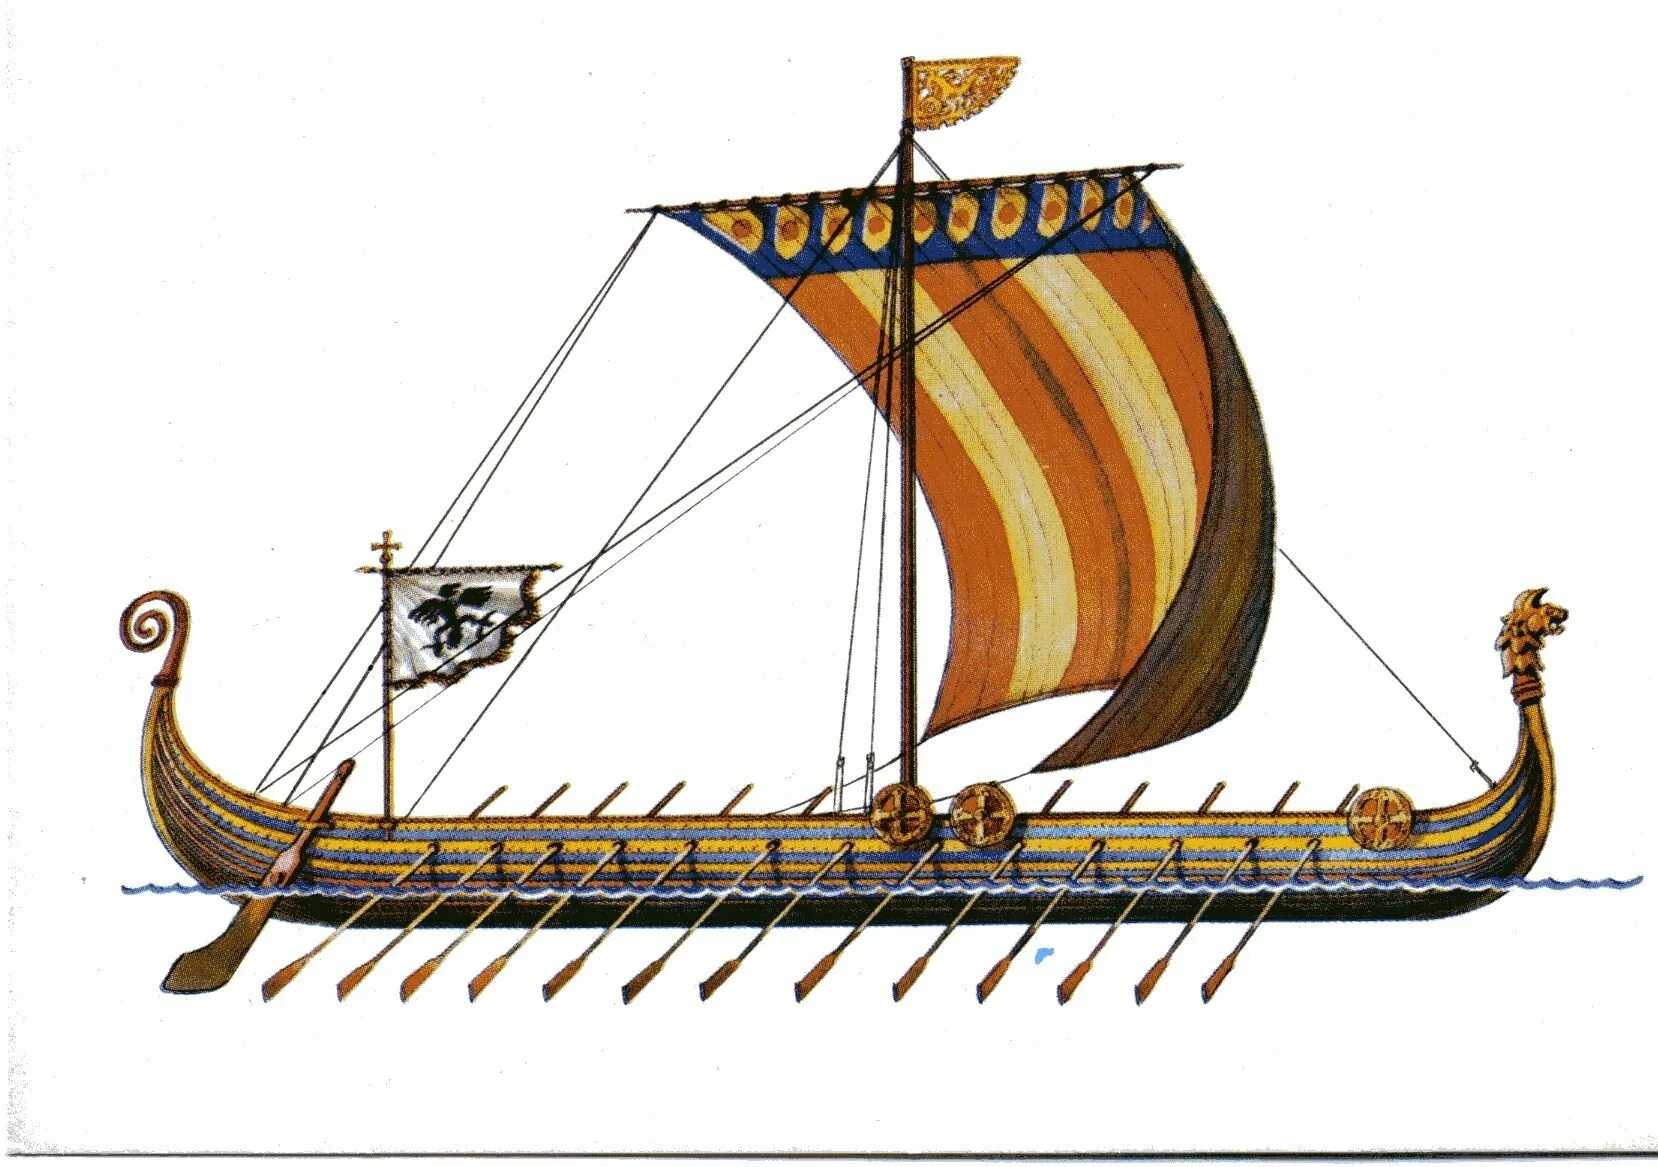 Ладья рисунок. Корабль викингов Drakkar. Ладья викингов дракар. Корабль викингов Драккар 10 век. Корабли Вильгельма завоевателя.